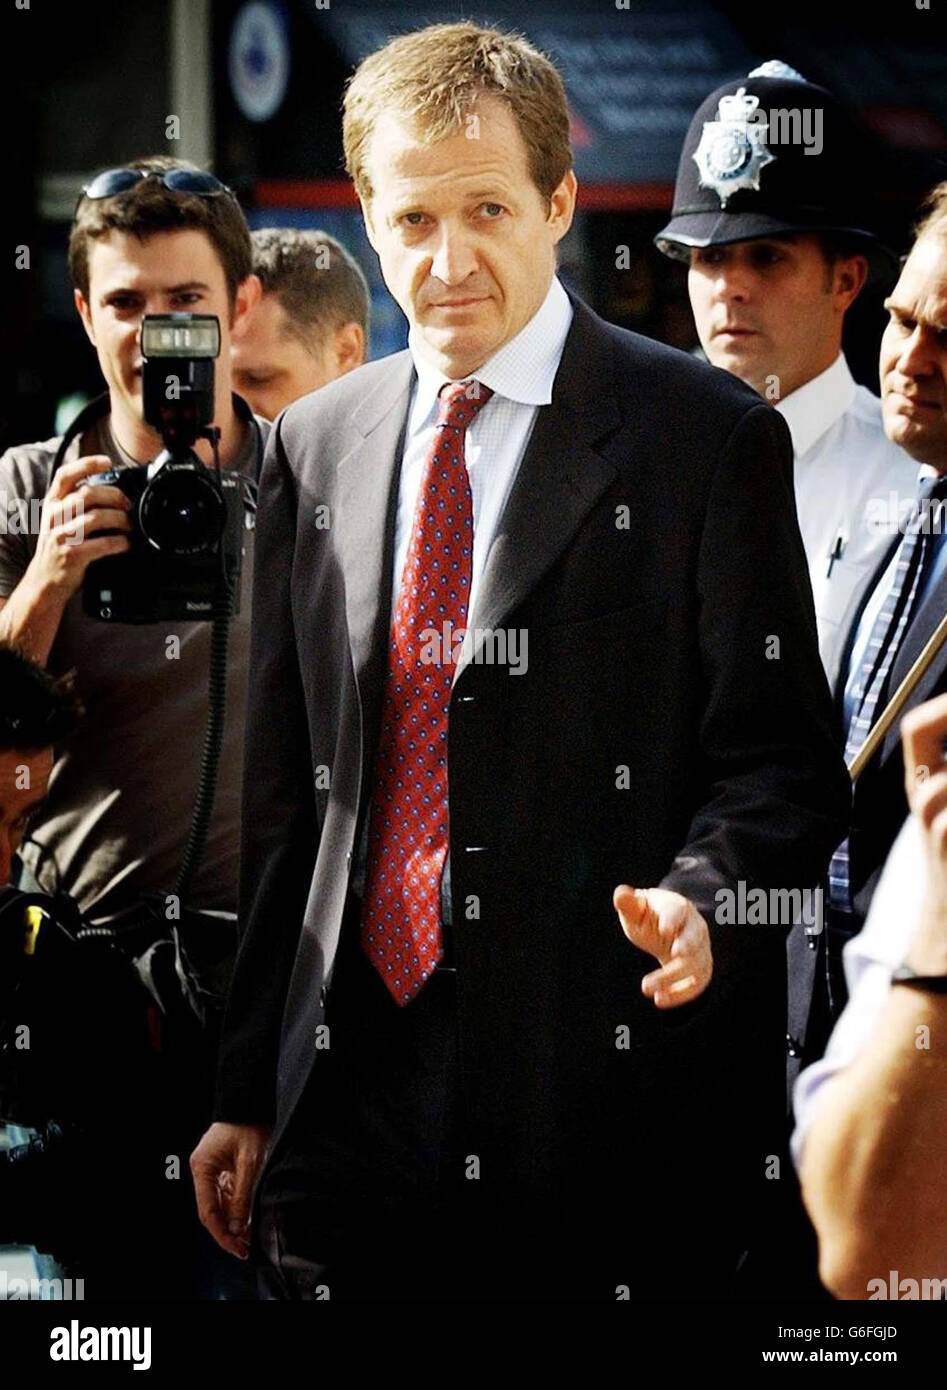 Alastair Campbell, der Direktor für Kommunikation und Strategie der Regierung, kam am High Court in London an, um die Hutton-Untersuchung zu belegen. BBC berichtet, dass Herr Campbell im Vorfeld des Krieges die Geheimdienste über den Irak "versenkte", eine wütende Reihe mit Nr. 10, Und er forderte eine Entschuldigung, nachdem er beschuldigt wurde, eine Behauptung veröffentlicht zu haben, Saddam Hussein könne in 45 Minuten Massenvernichtungswaffen gegen den Willen von Geheimdiensten starten. Die Untersuchung untersucht Ereignisse rund um den offensichtlichen Selbstmord des Waffenexperten Dr. David Kelly, nachdem er als Quelle der geoutet wurde Stockfoto